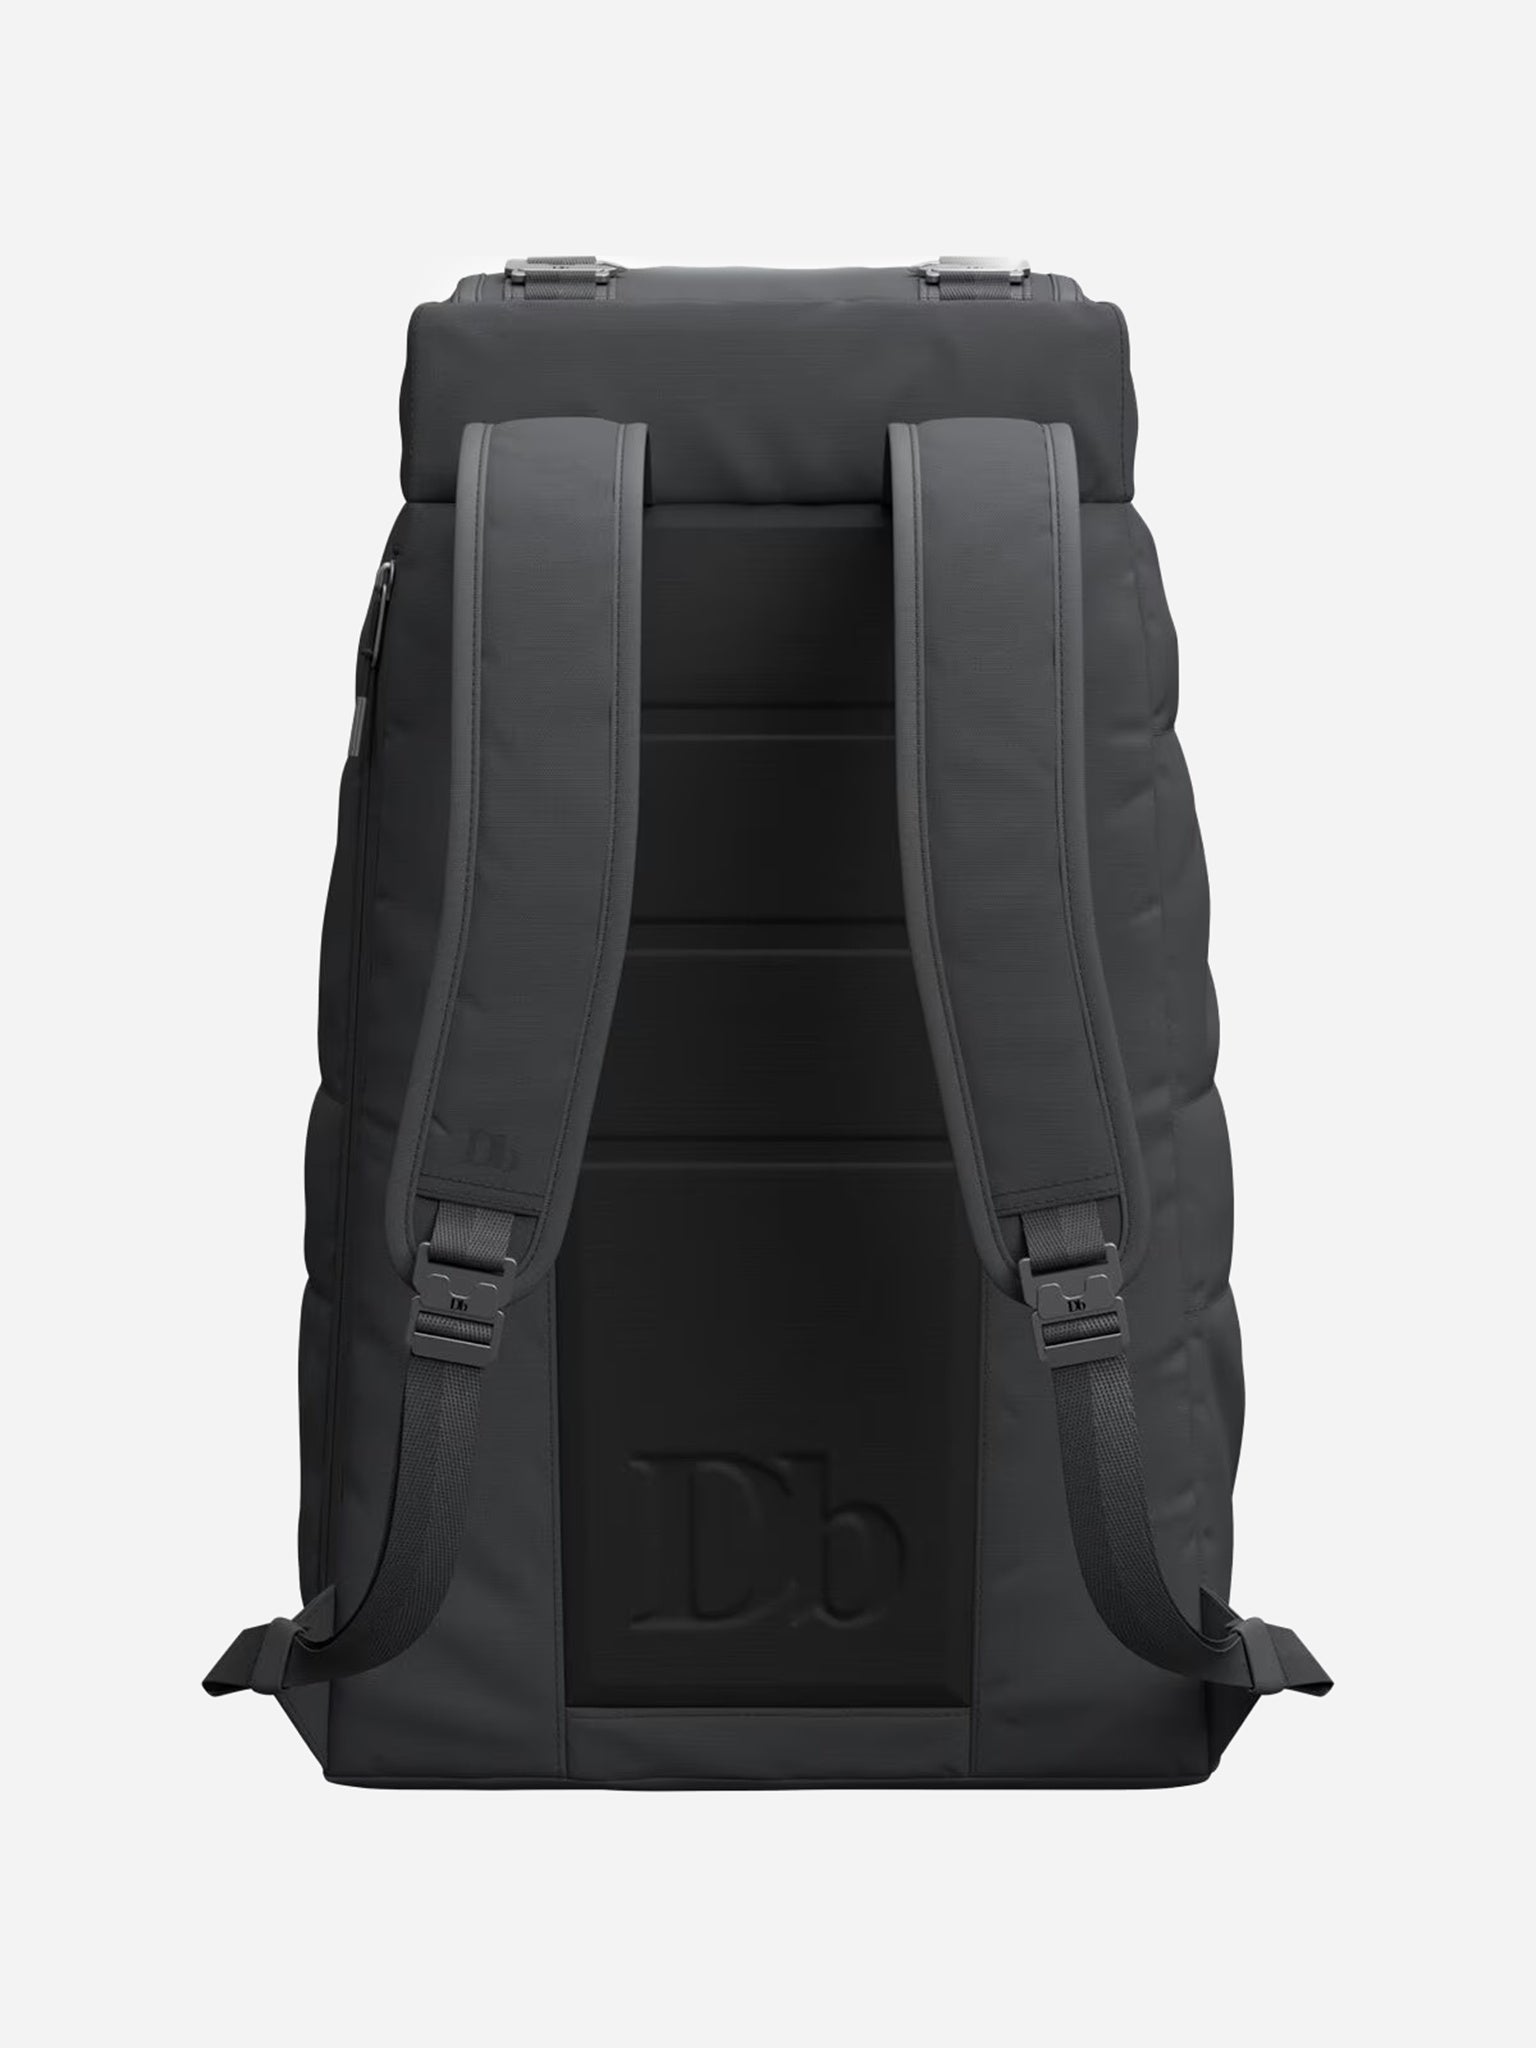 DB Hugger Carry-On Backpack Black 20L | Case Luggage UK